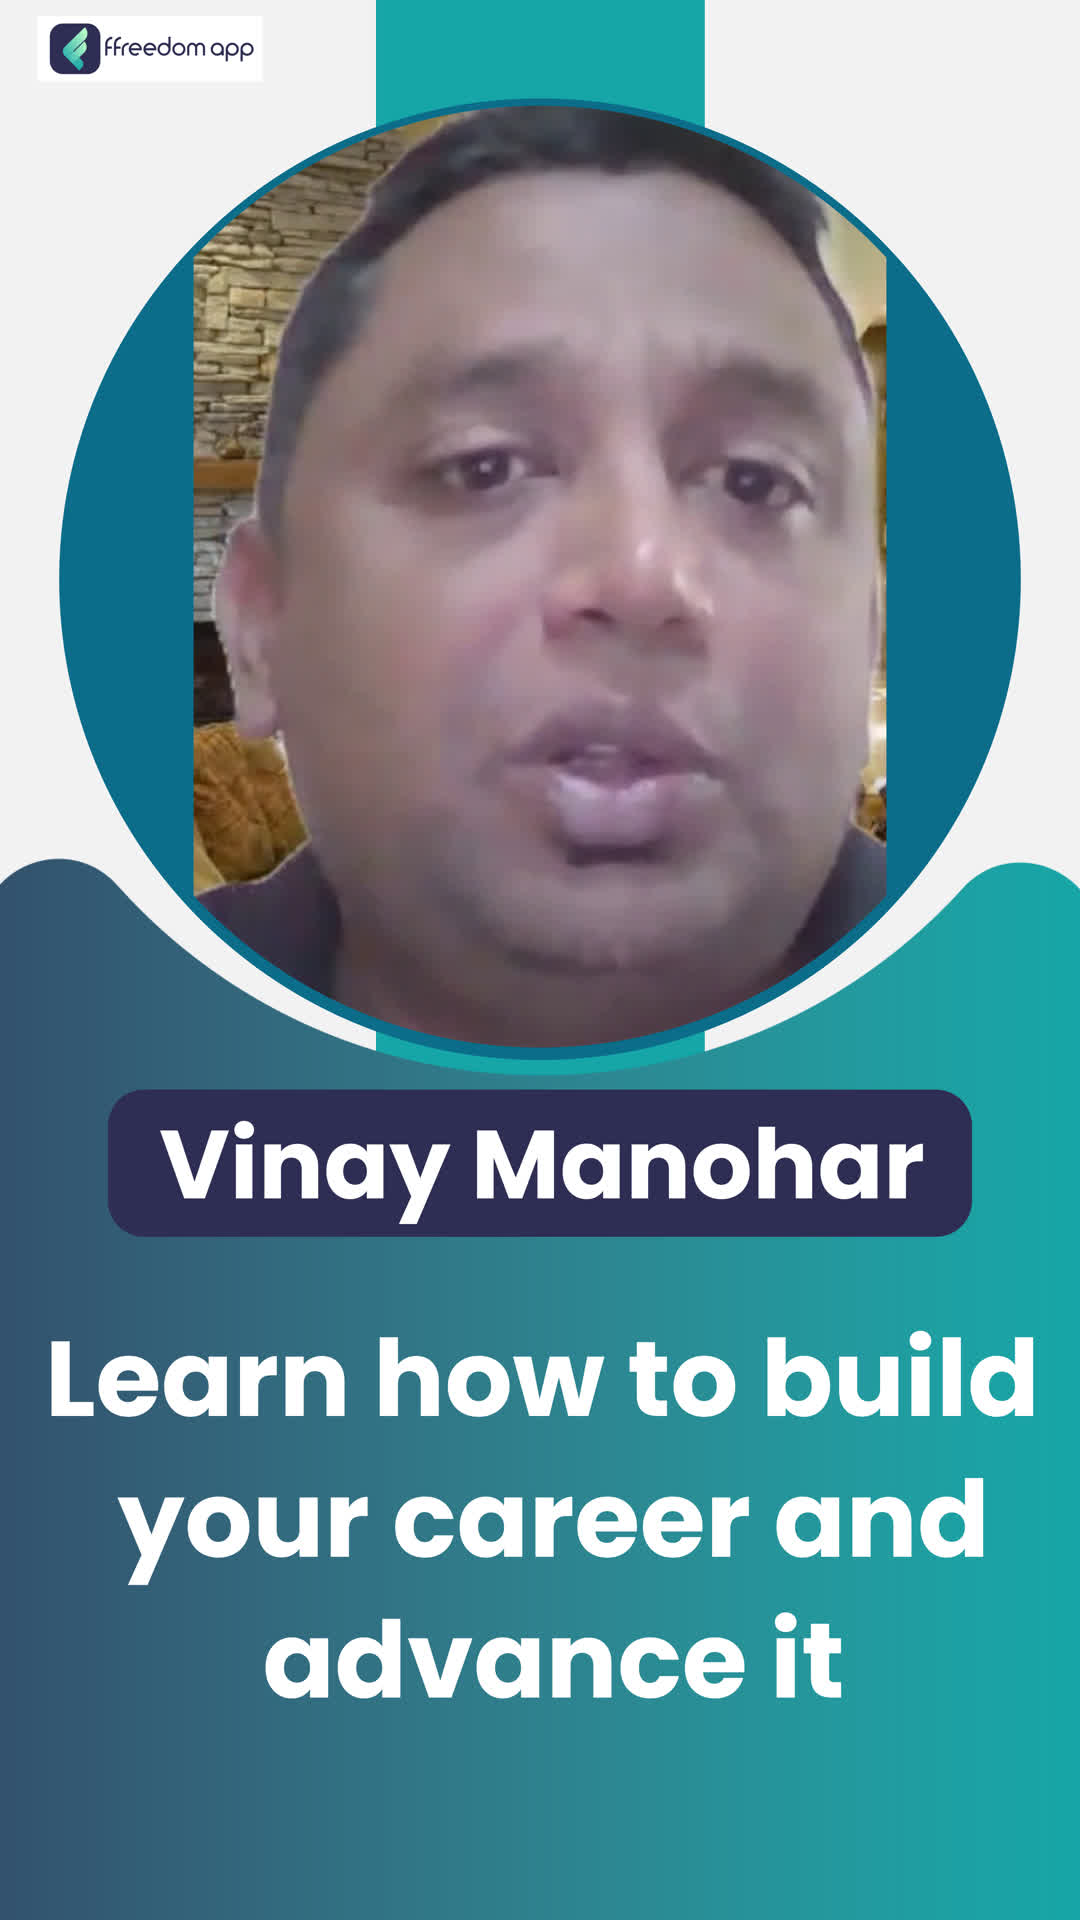 Vinay Manohar's Honest Review of ffreedom app - Bengaluru City ,Karnataka